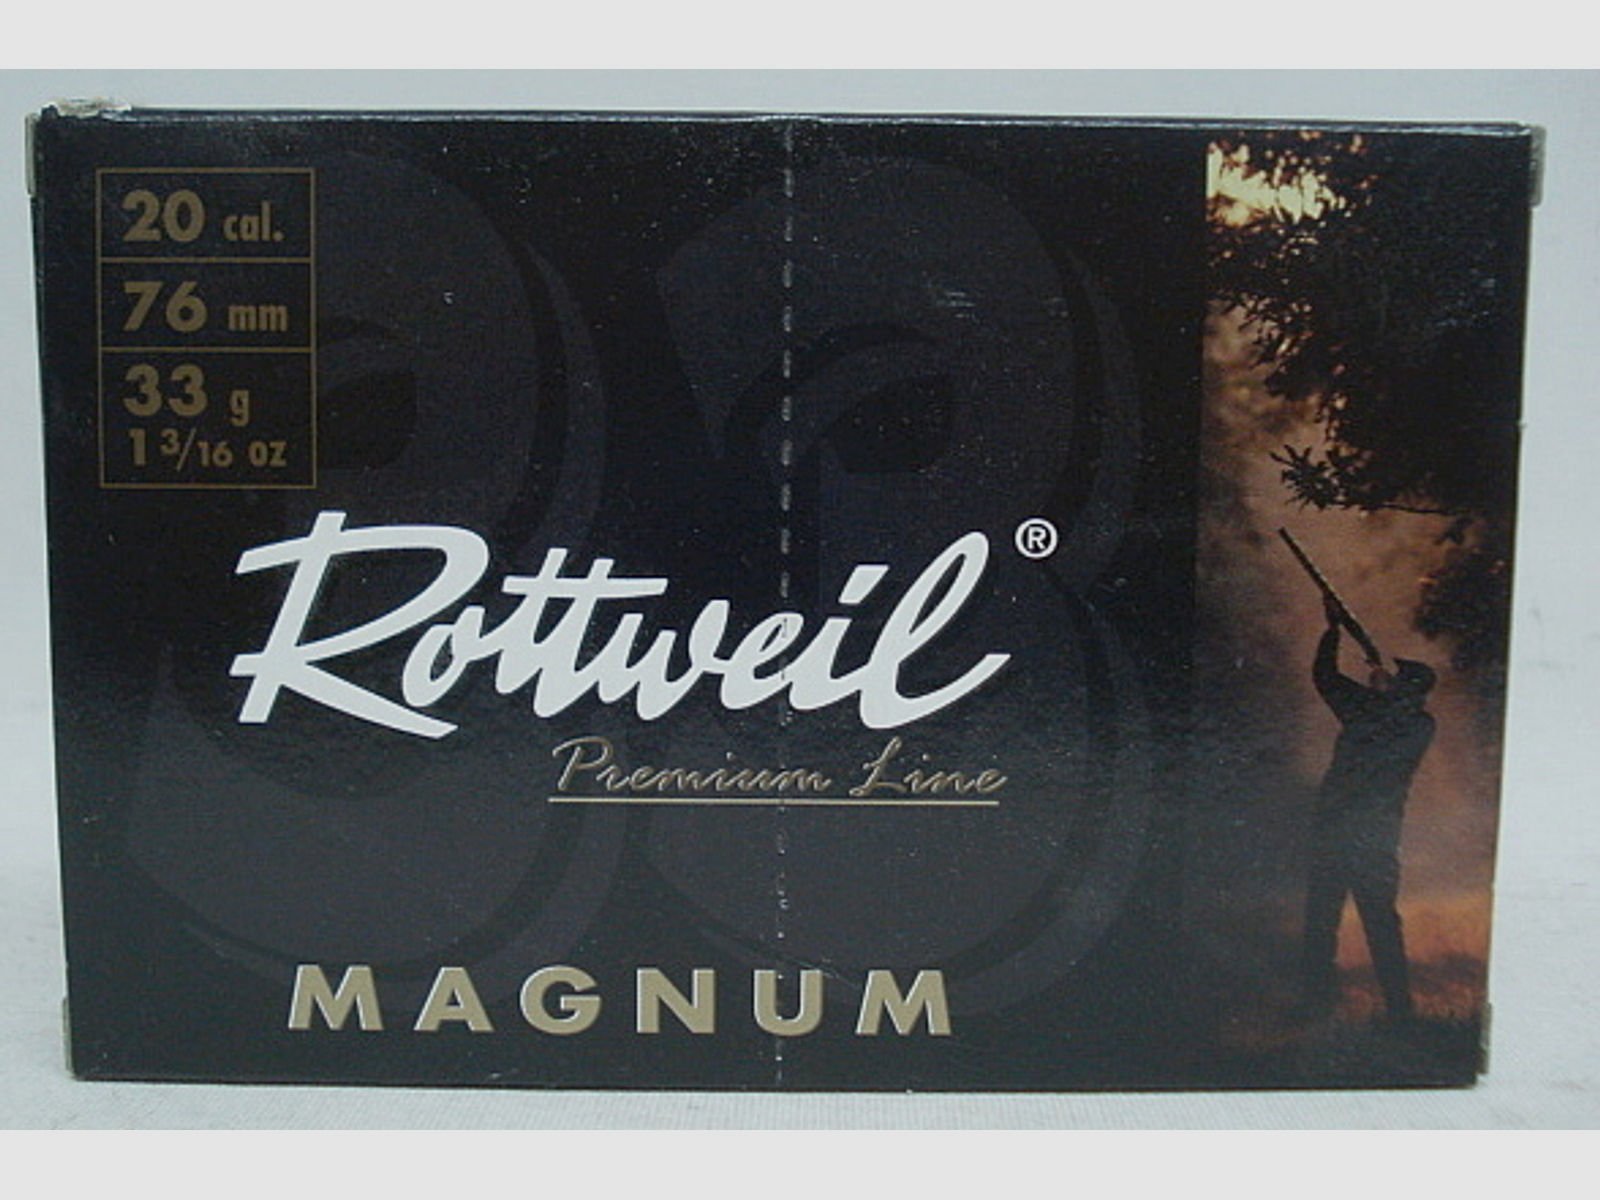 Magnum 20/76 - 3,0mm/33g (a10)